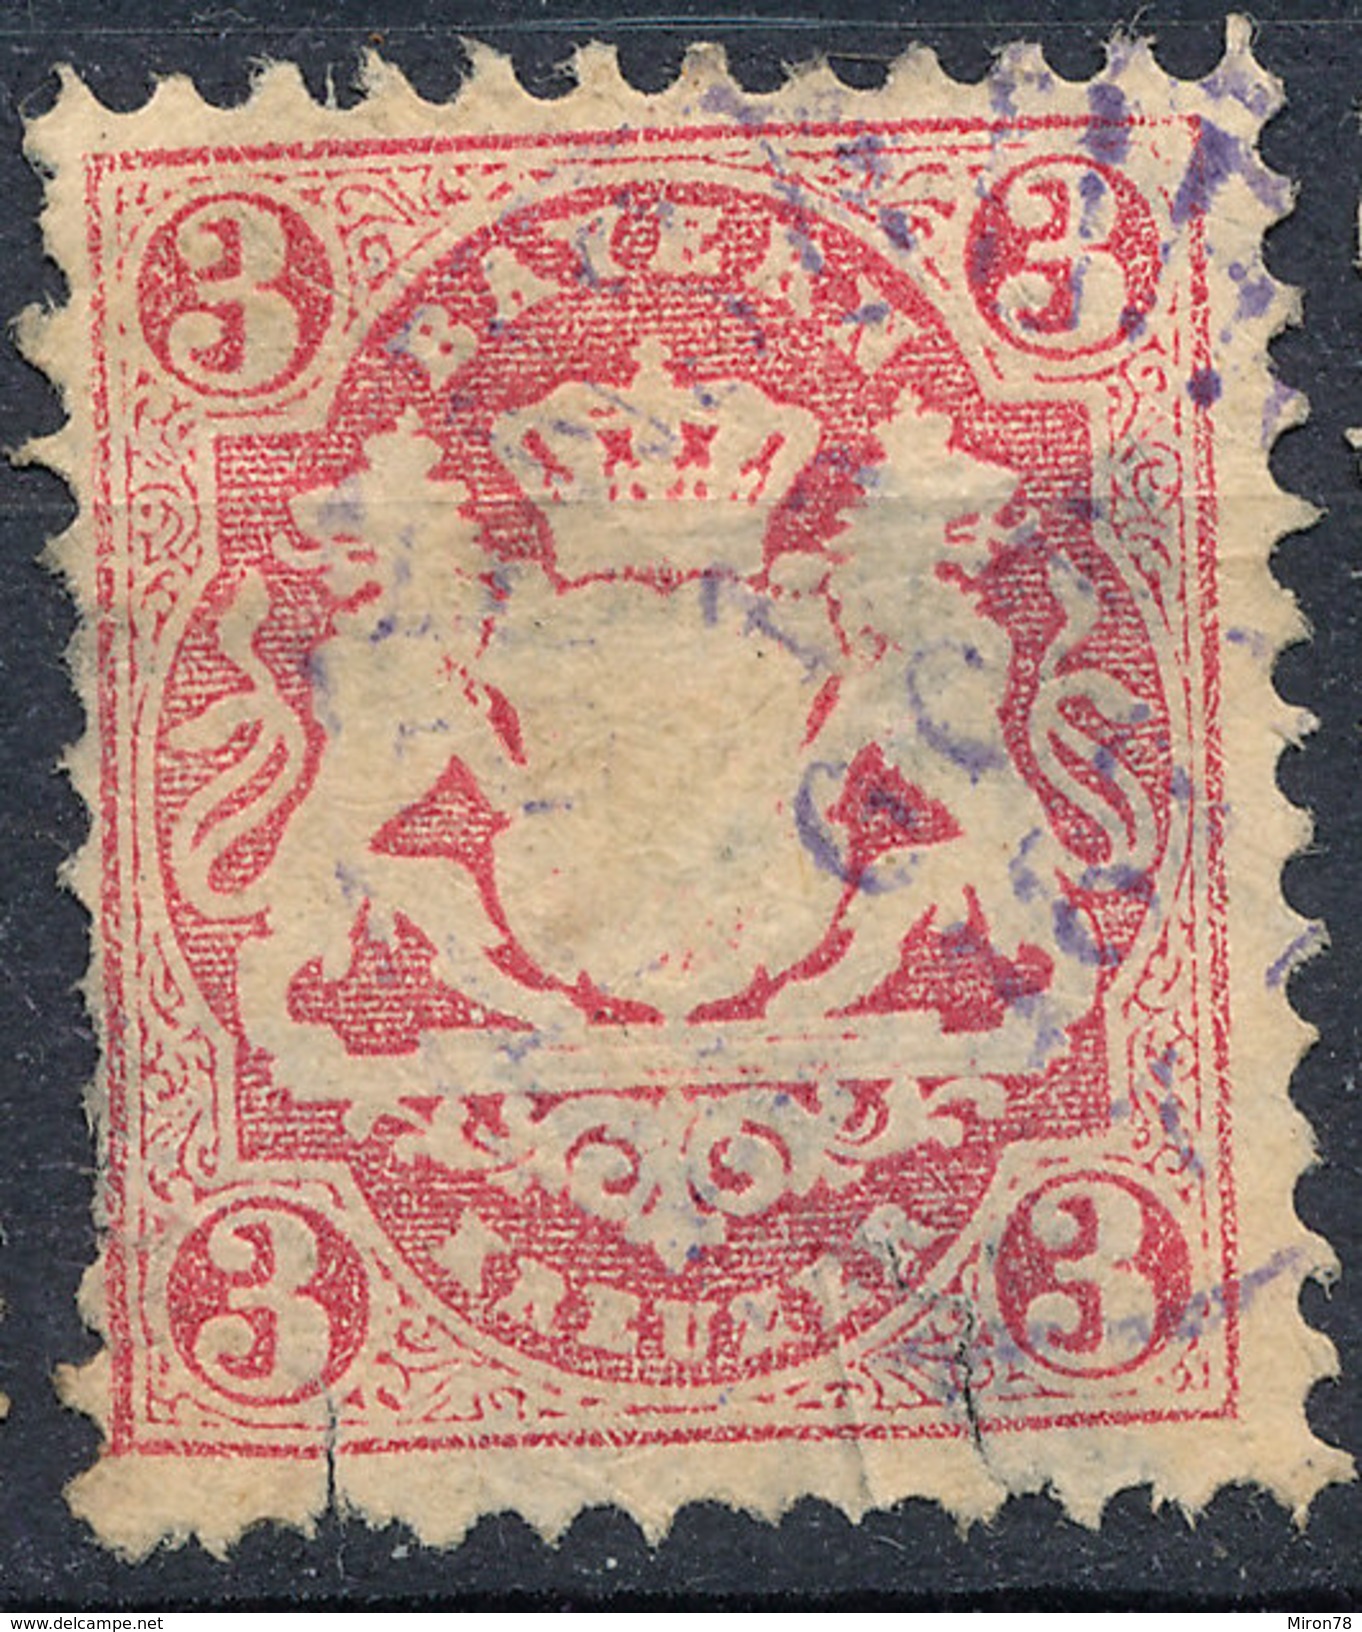 Stamp Bavaria 1870-72 3kr Used Lot#42 - Used